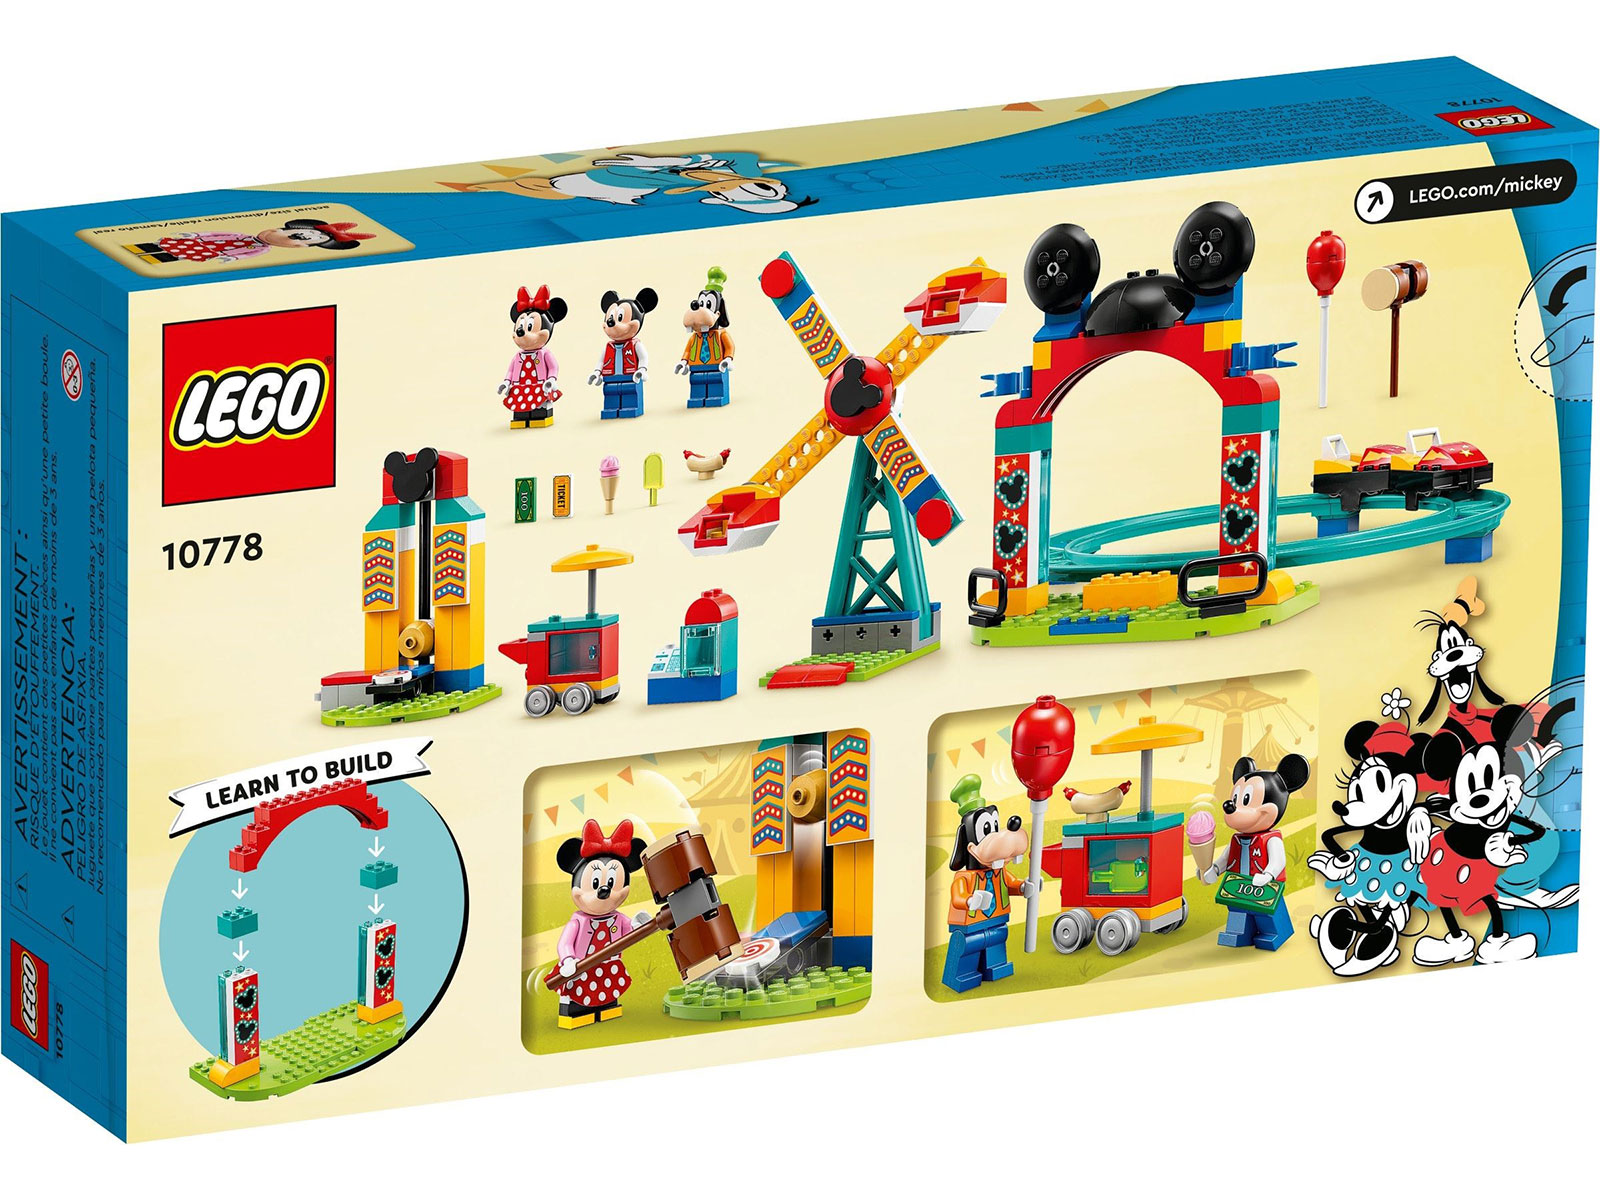 LEGO® Disney™ 10778 - Micky, Minnie und Goofy auf dem Jahrmarkt